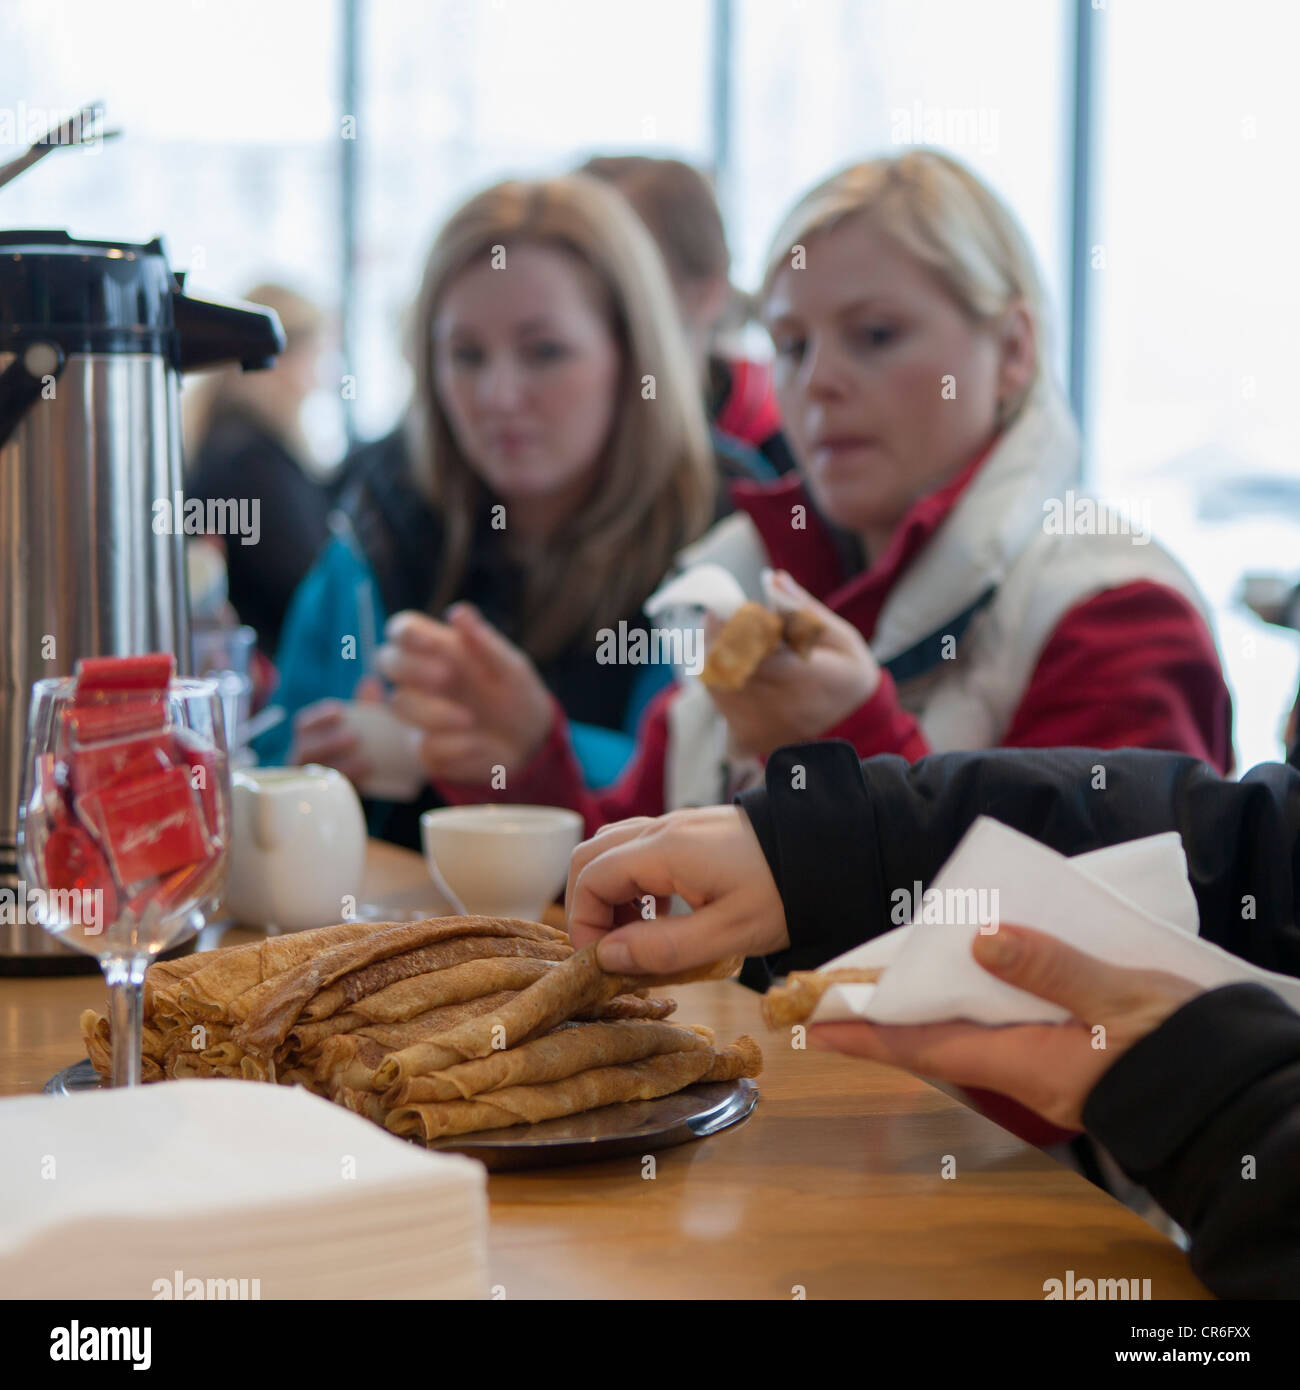 Kaffeepause mit traditionelle isländische Pfannkuchen, Dalvik, Island Stockfoto